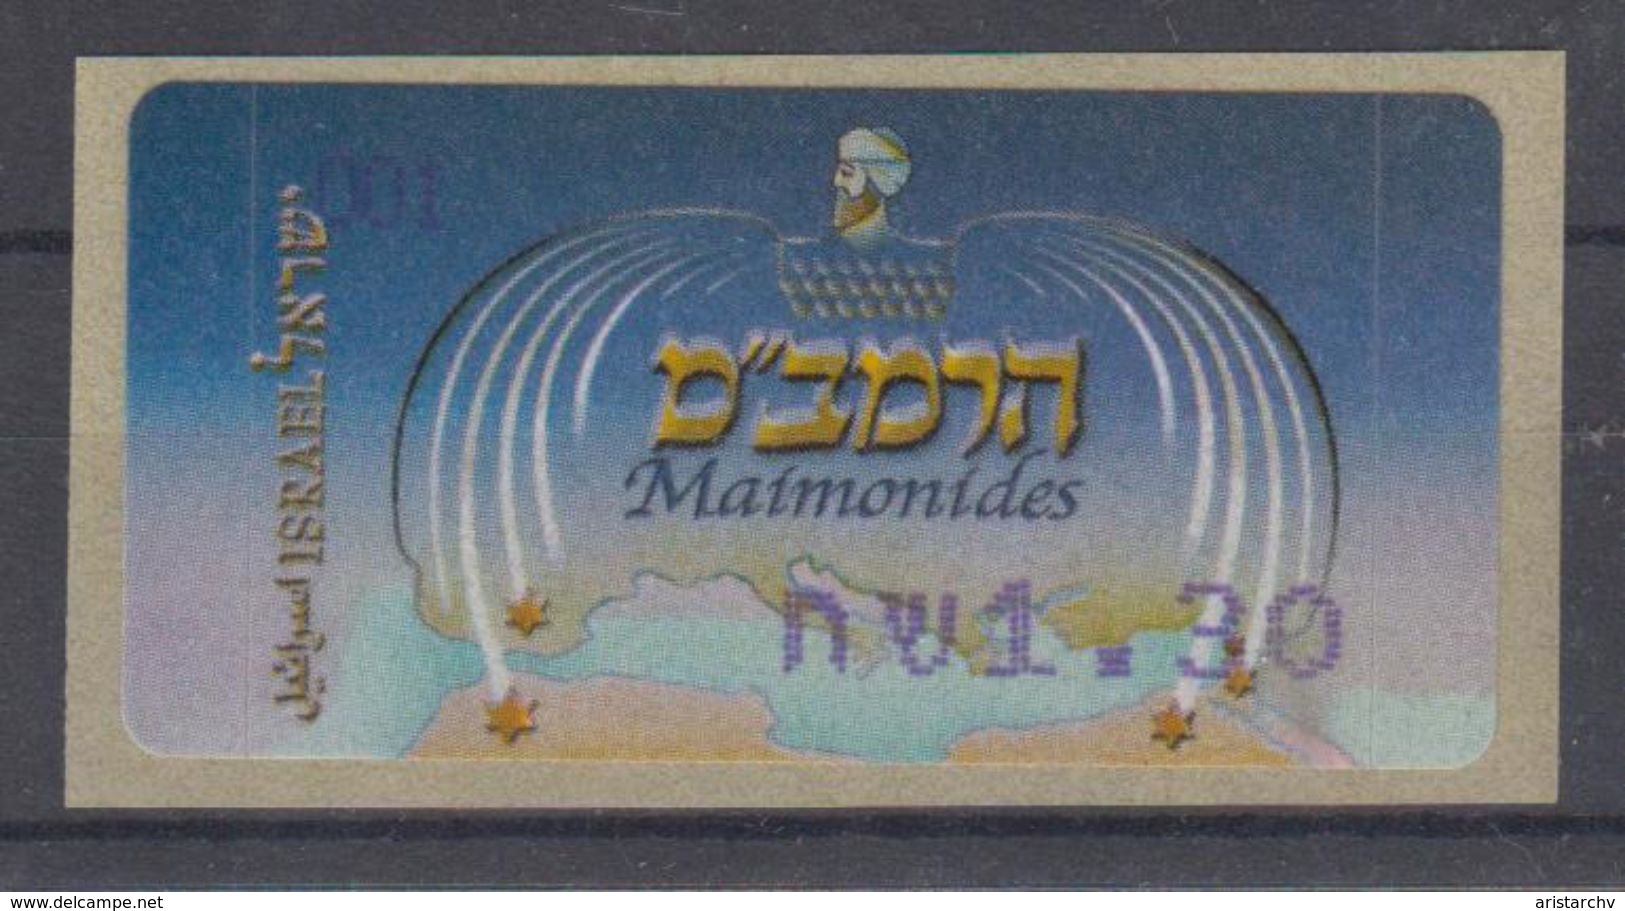 ISRAEL 2005 KLUSSENDORF ATM RAMBAM MAIMONIDES 1.30 2.80 SHEKELS - Vignettes D'affranchissement (Frama)